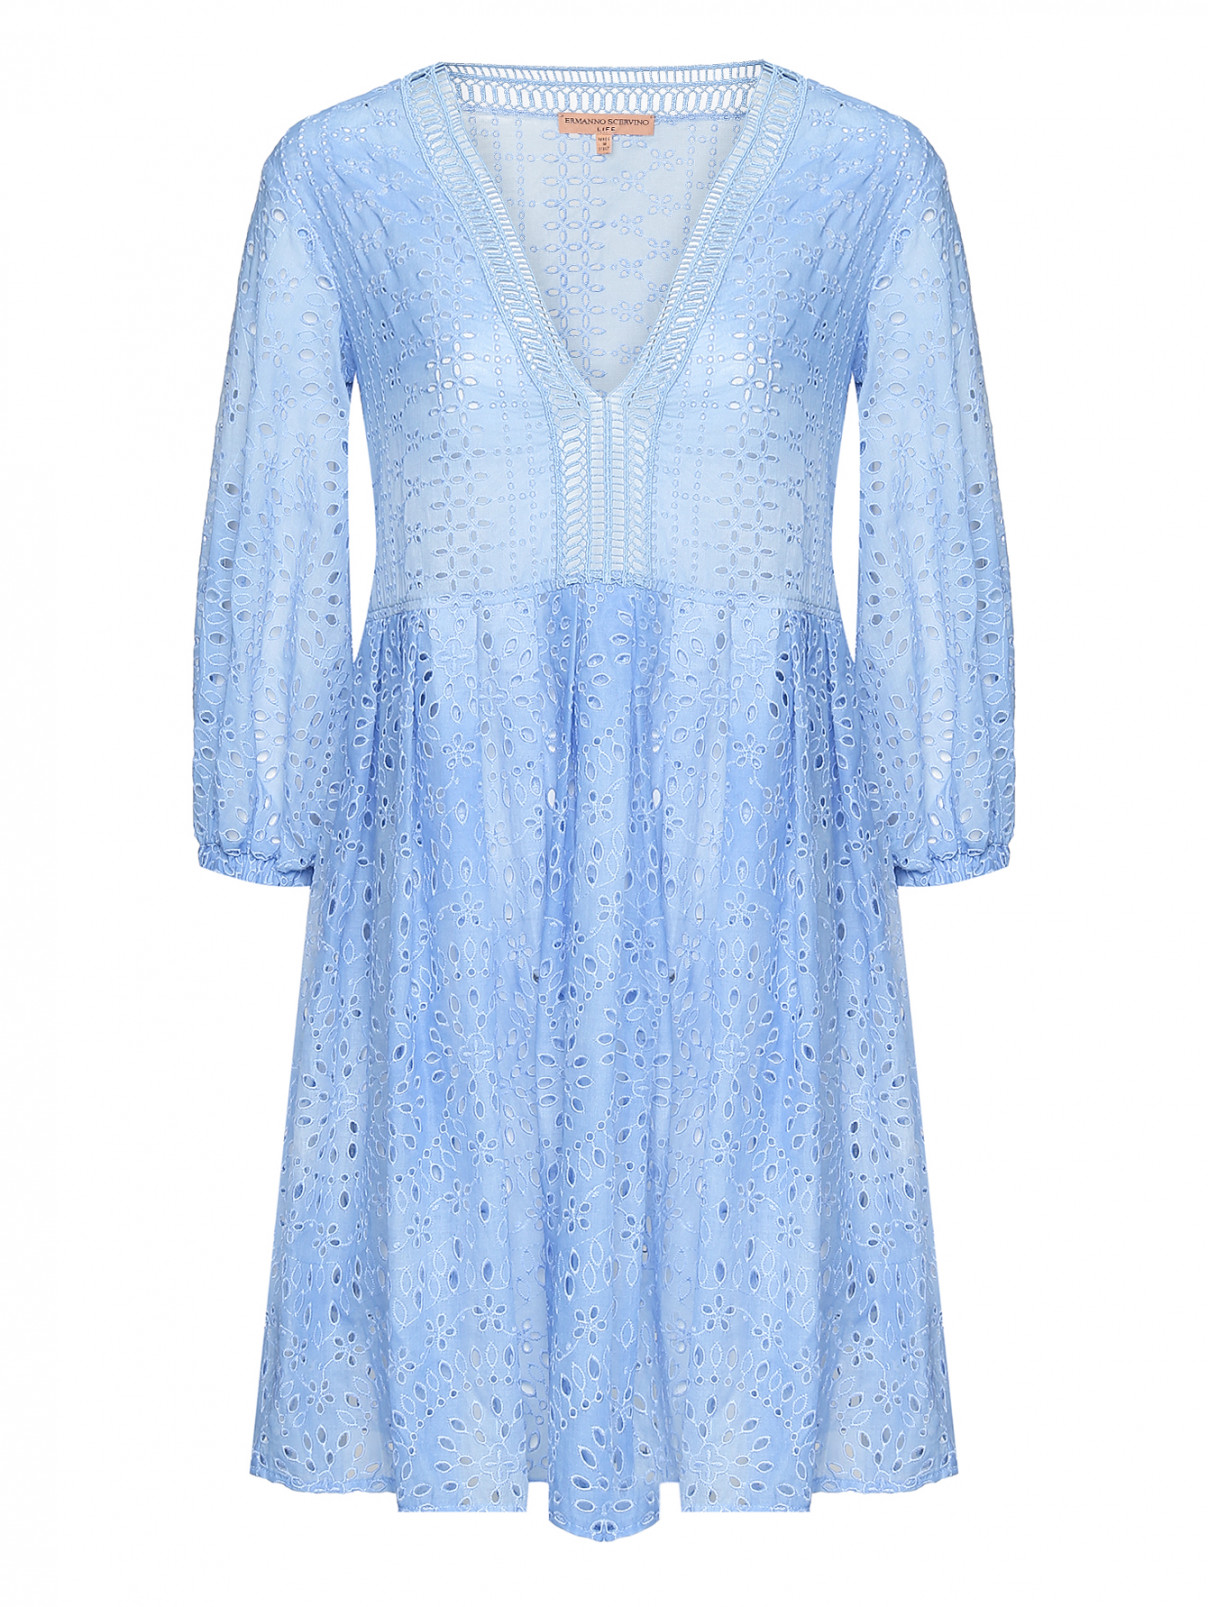 Платье из хлопка с вышивкой ришелье Ermanno Scervino  –  Общий вид  – Цвет:  Синий